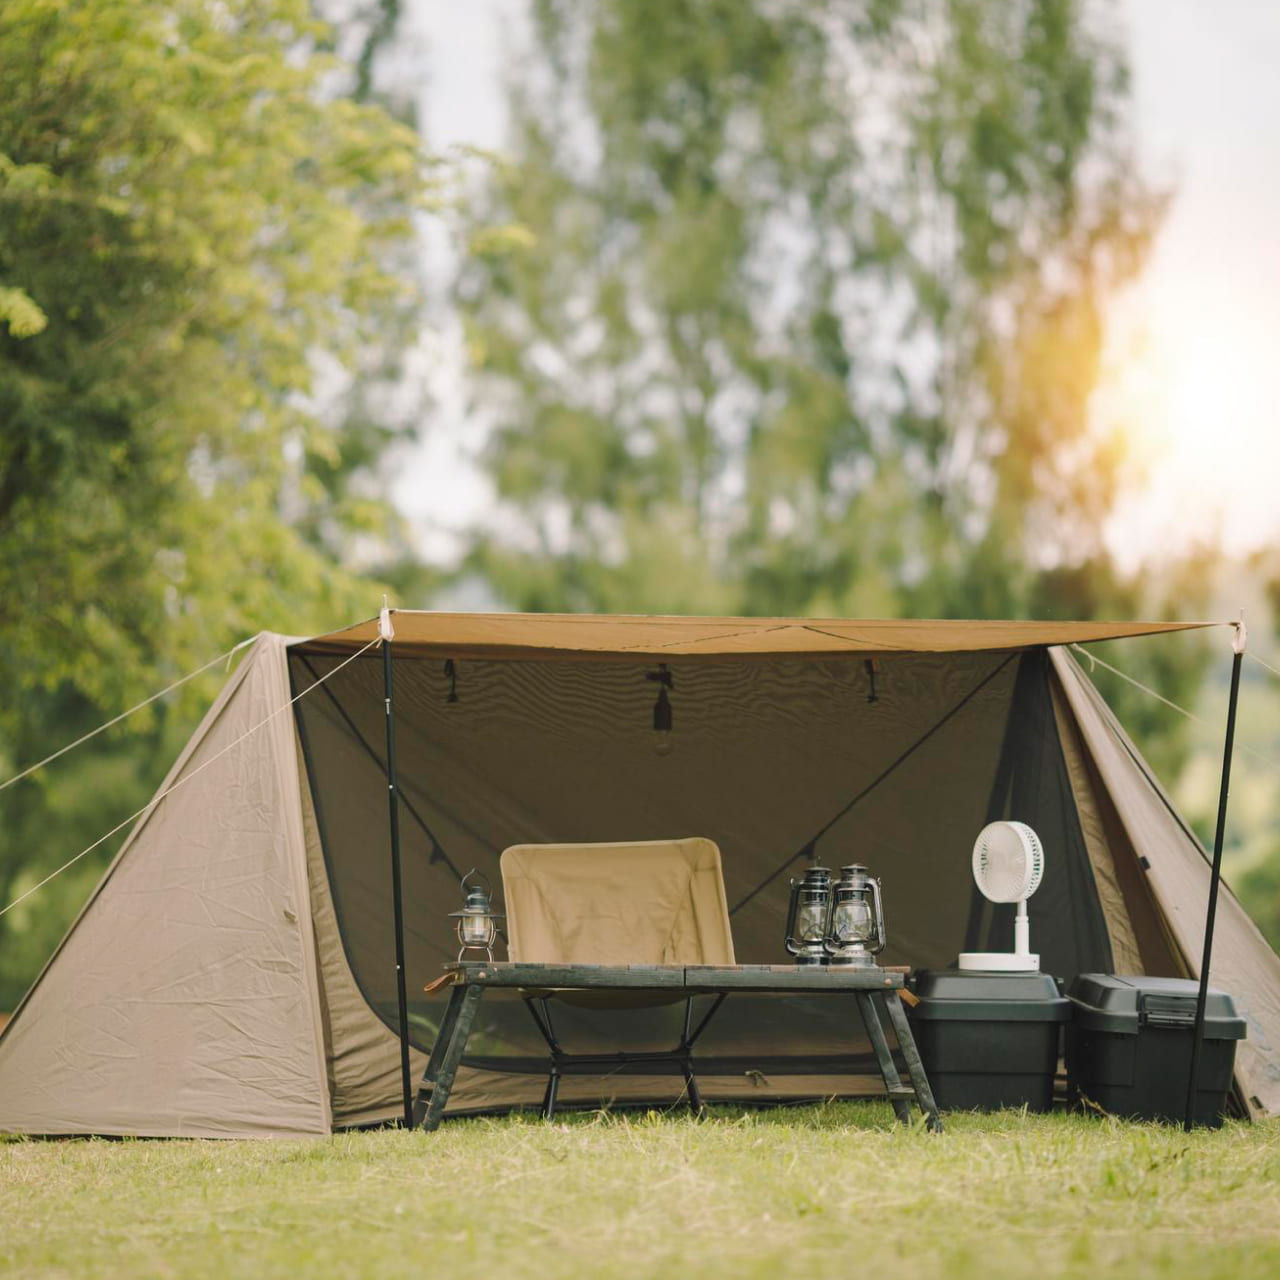 露營裝備清單第 1 項：露營帳篷